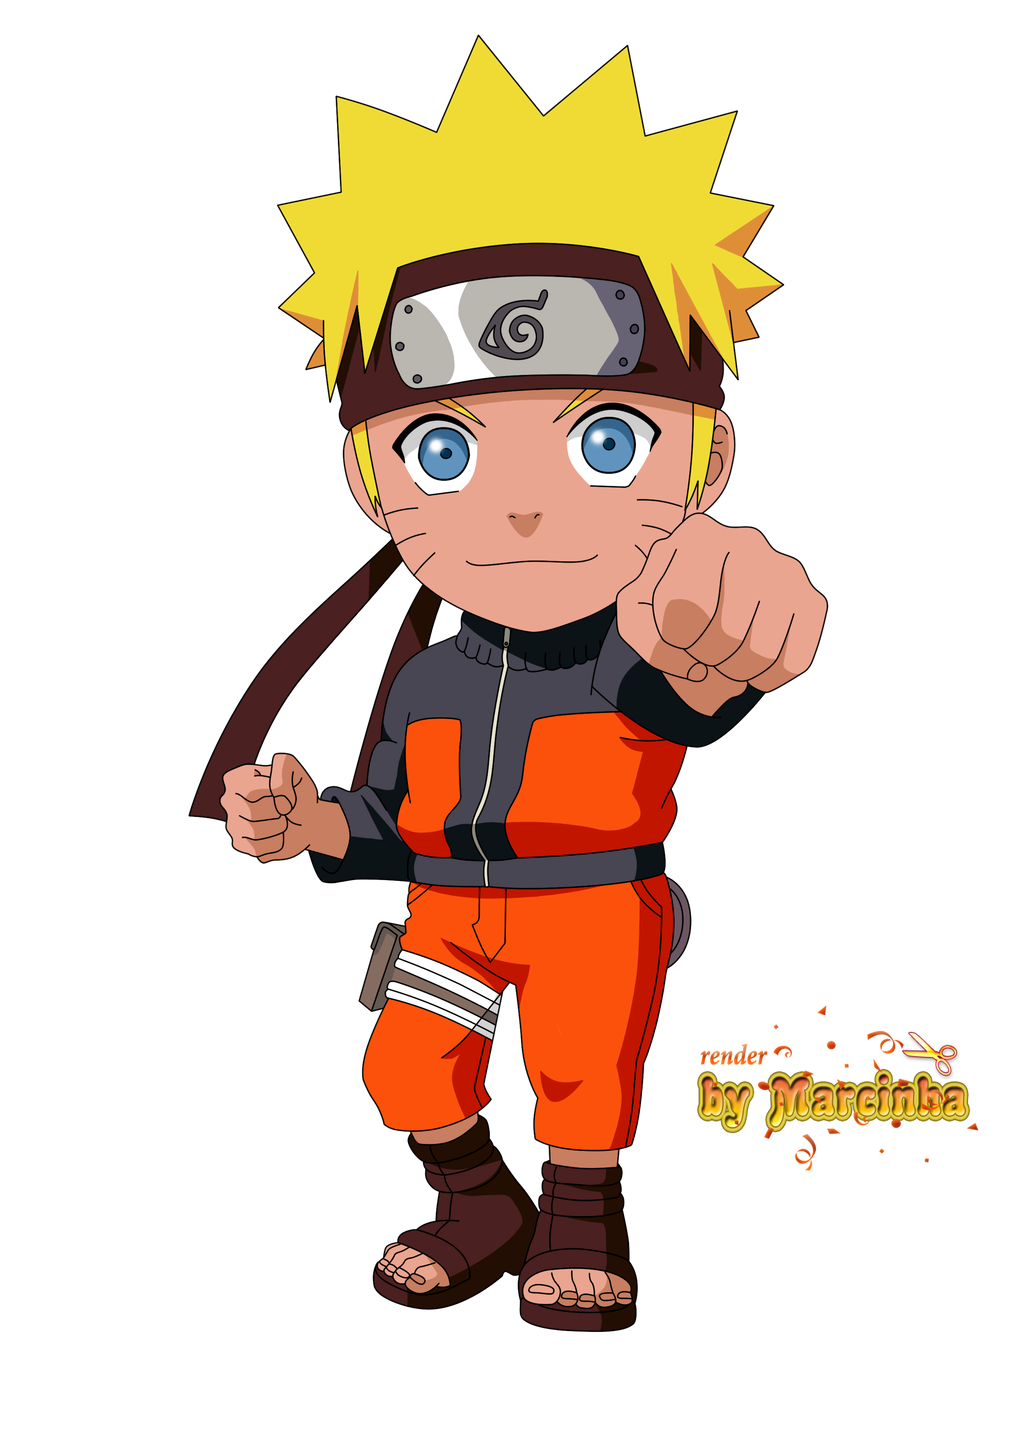 Gambar Naruto Chibi Wallpaper - Gudang Wallpaper